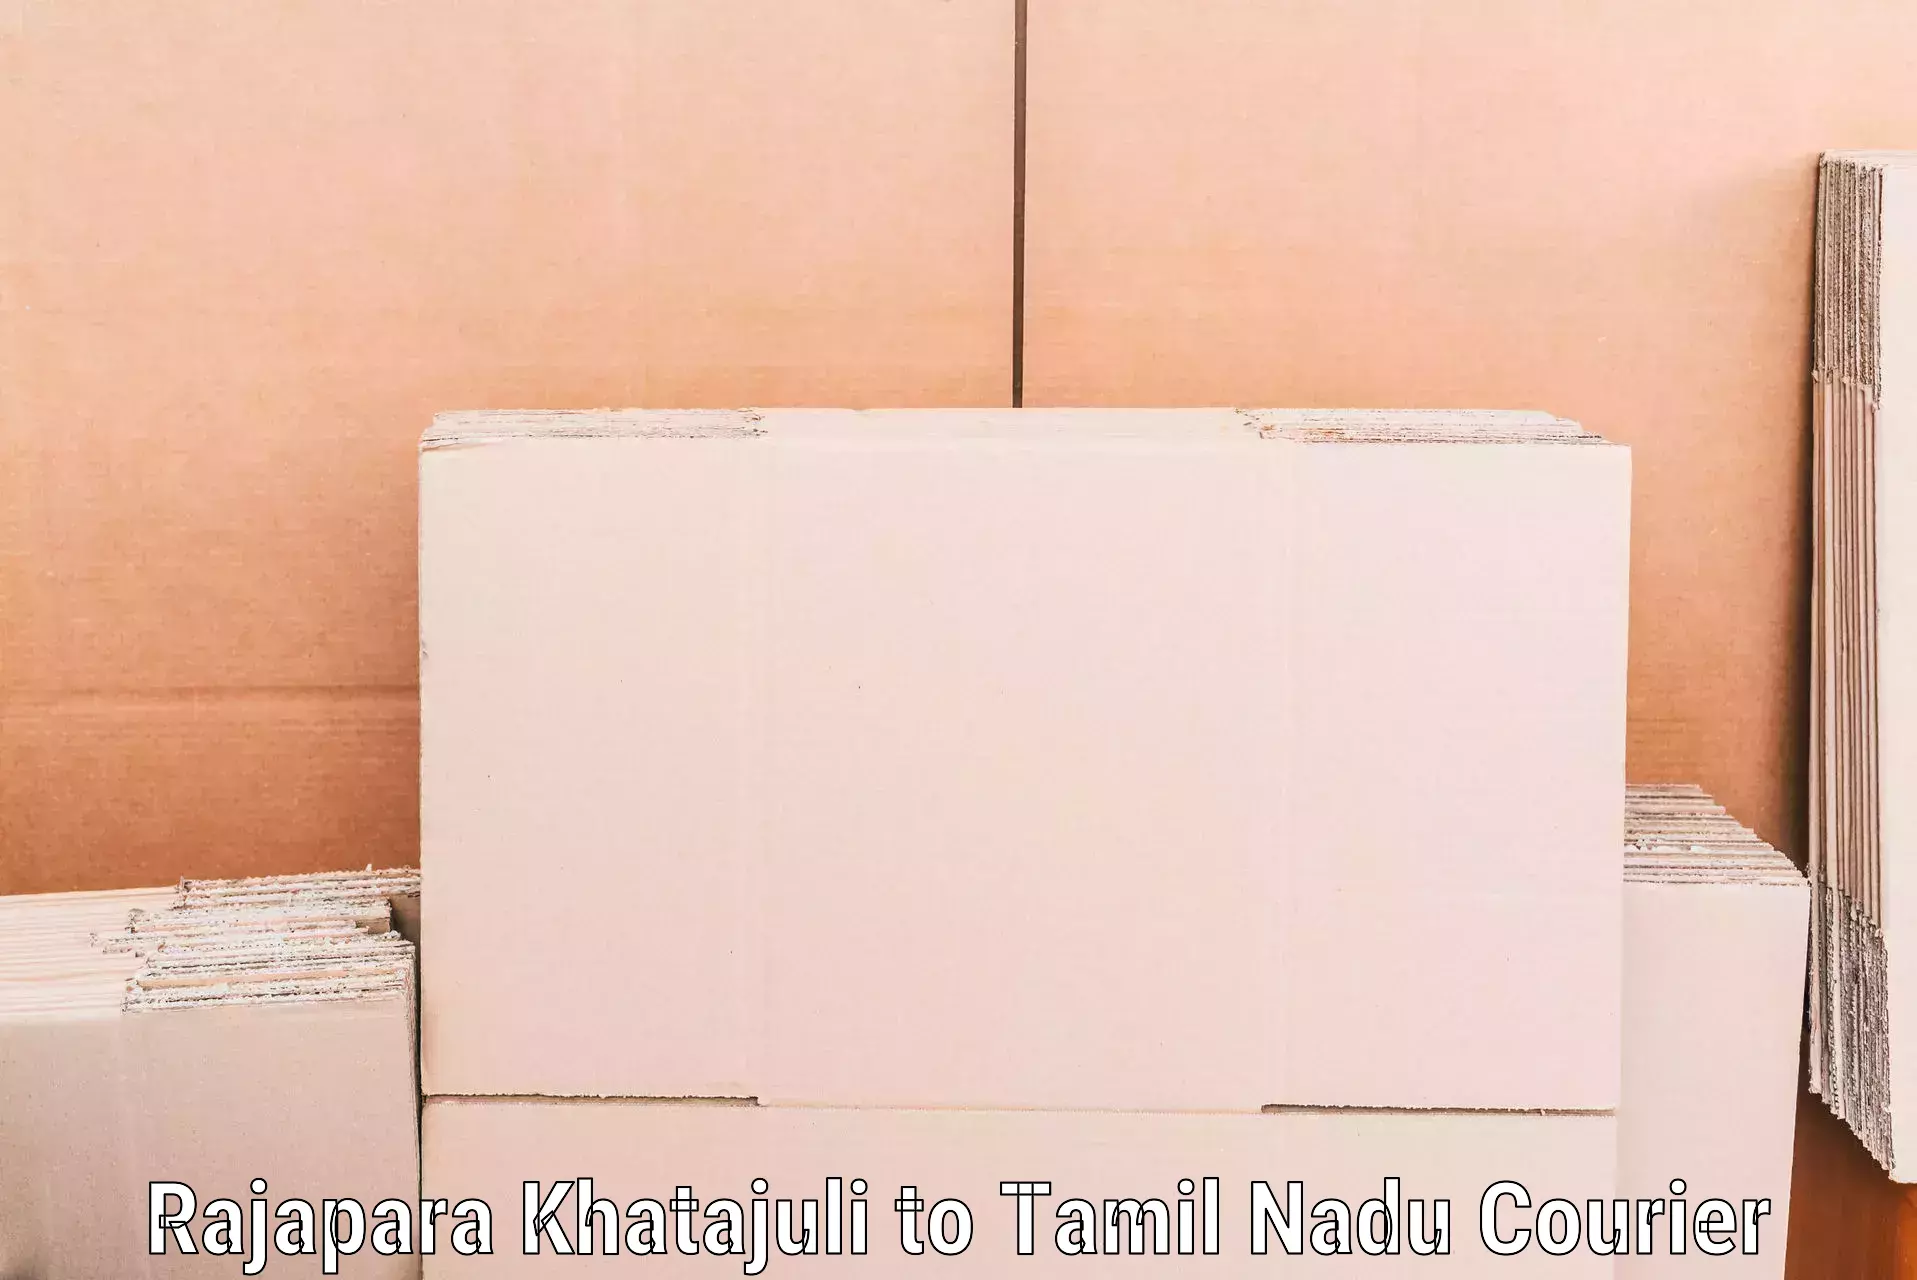 Furniture transport and logistics Rajapara Khatajuli to Tirunelveli